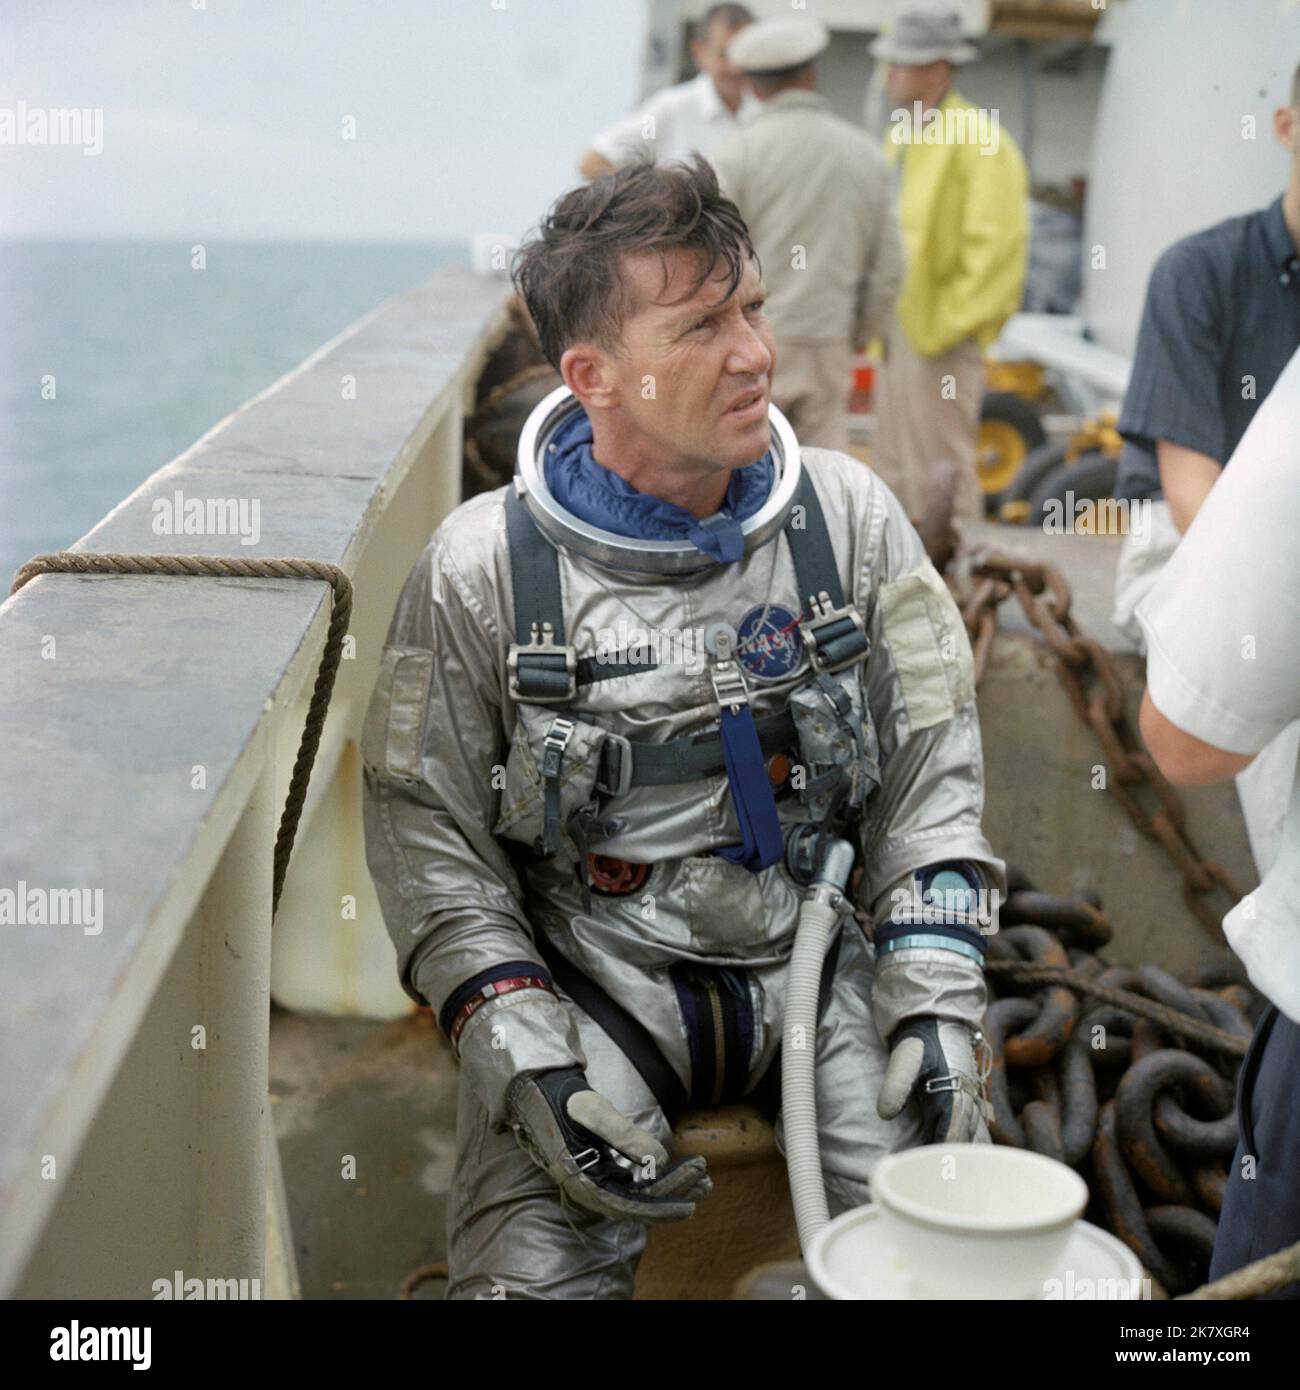 Astronaut Walter M. Schirra Jr., Kommandant von Gemini VI, tritt während des Wasserausstiegstrainings an Bord des NASA-Motorschiffs Retriever im Golf von Mexiko auf. Dieses Training bereitete die Astronauten darauf vor, die Kapsel nach der Landung im Ozean zu verlassen. Stockfoto